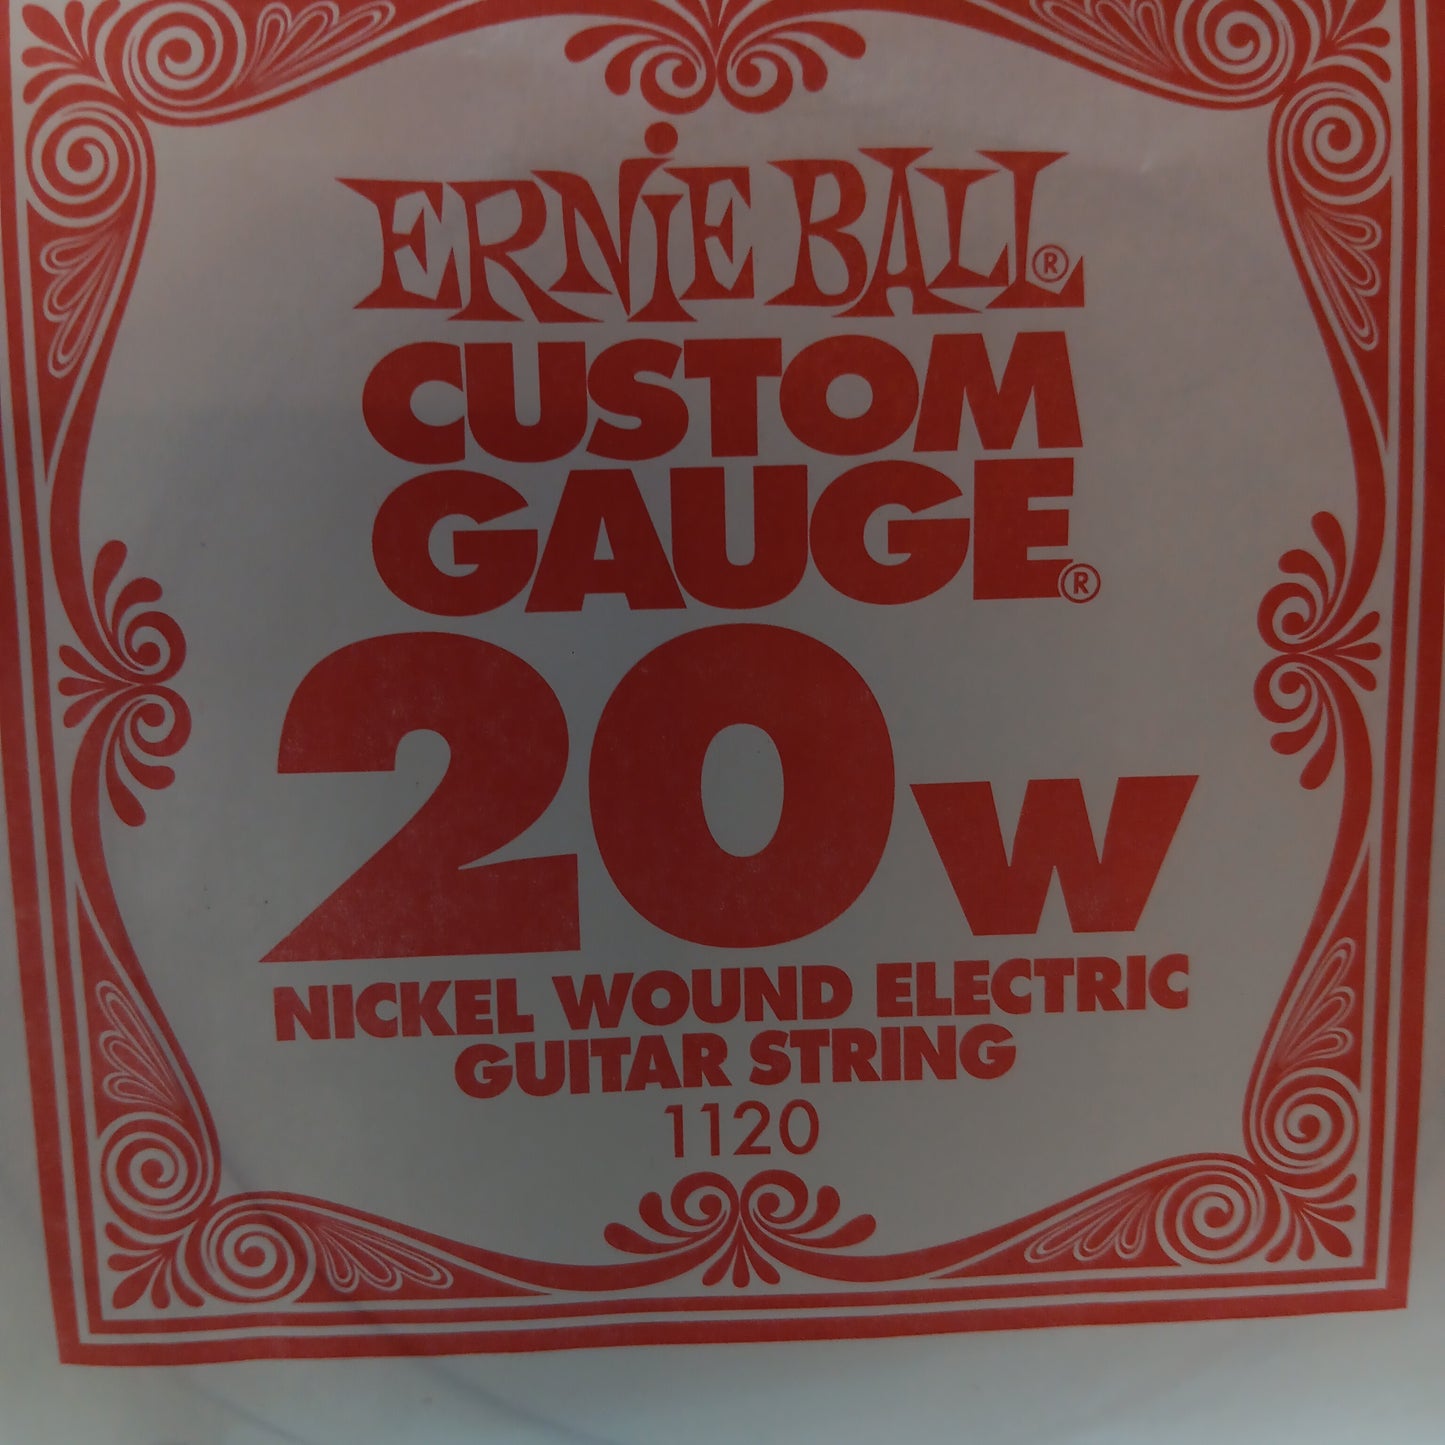 Ernie Ball Custom Gauge Nickel Wound Single Strings 1120/20W Gauge